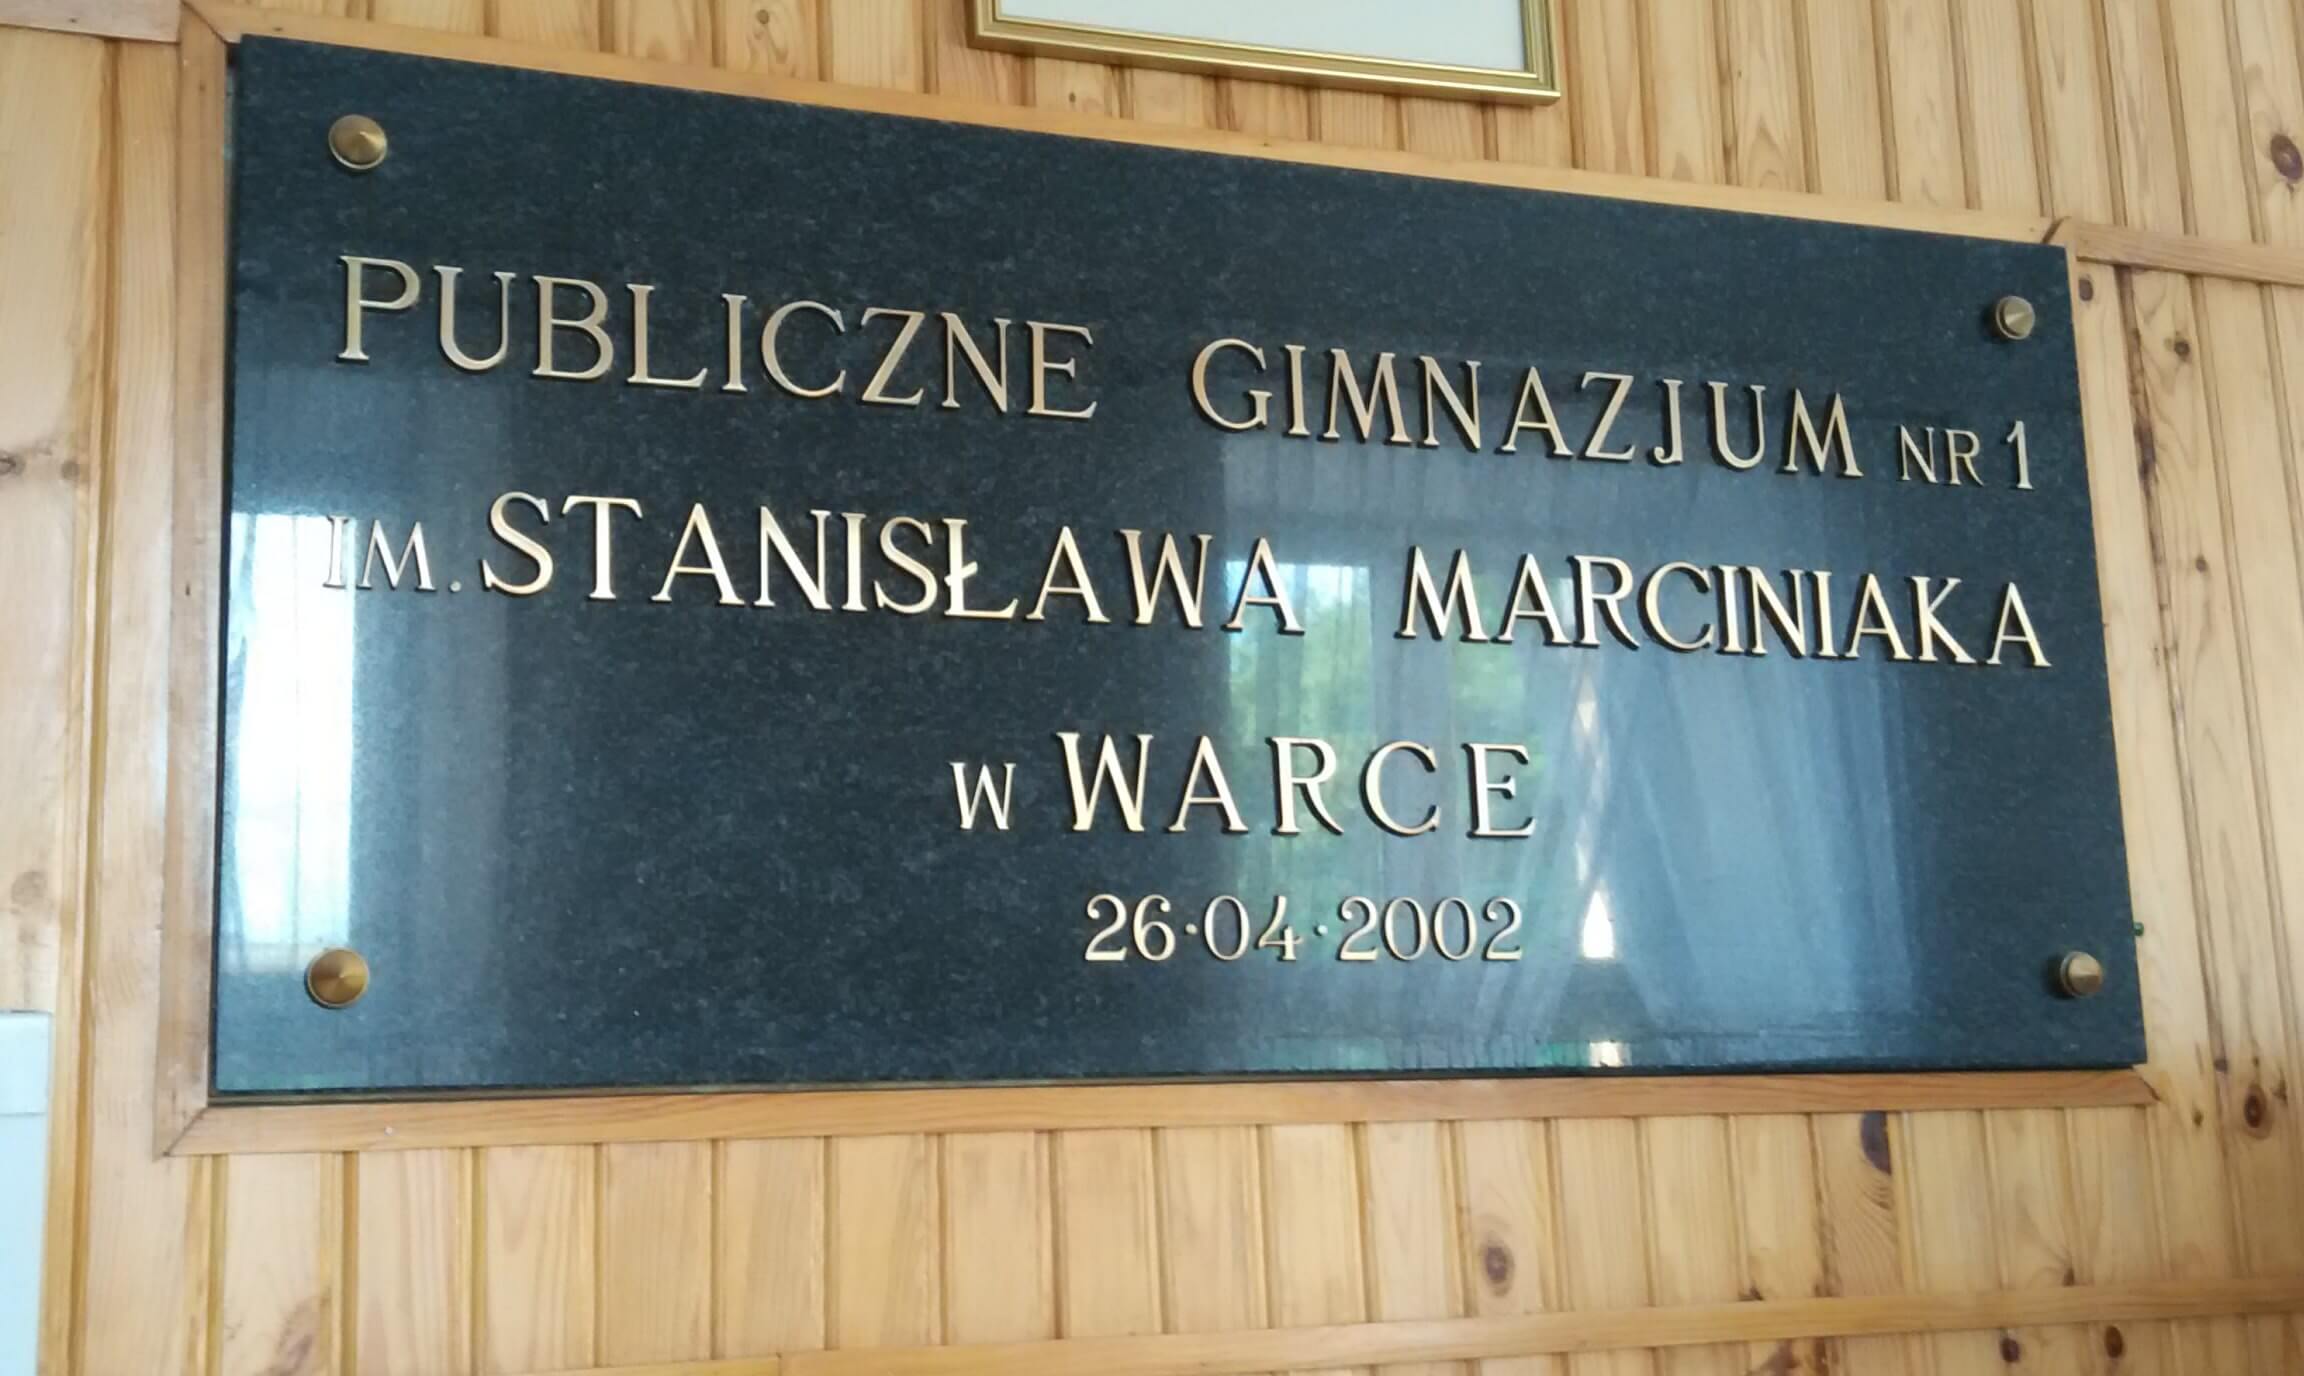 Gimnazjum Warka-tablica z nazwą szkoły